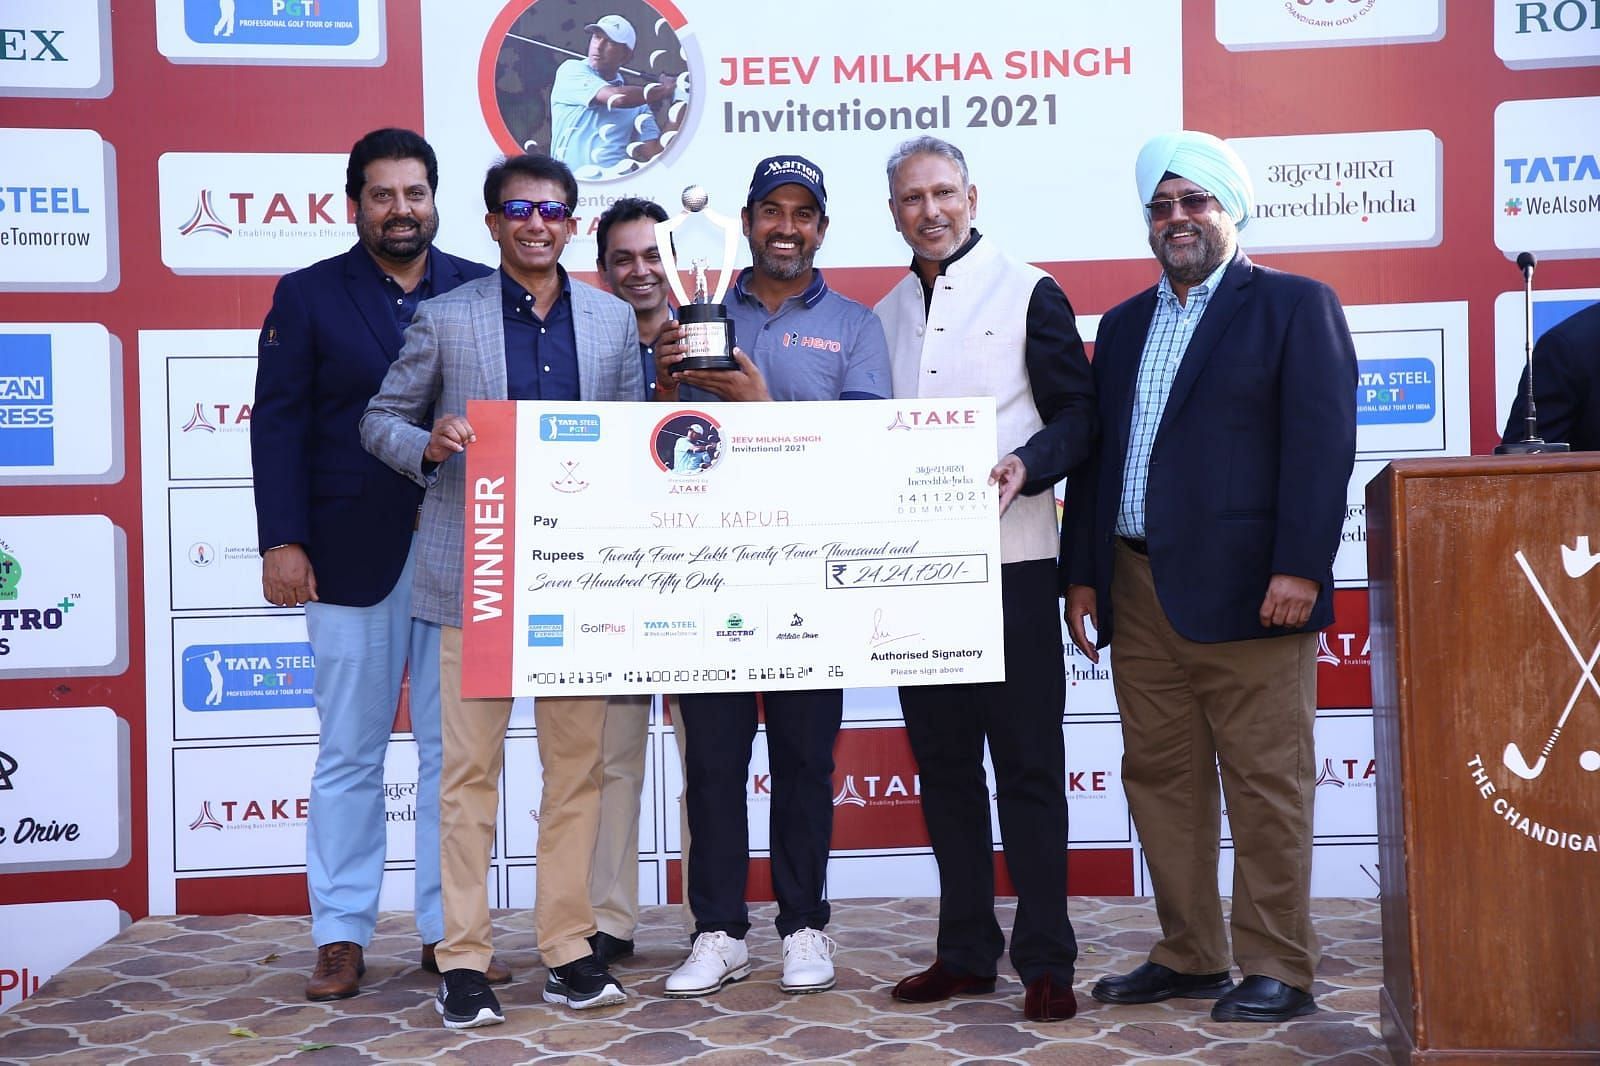 Shiv Kapur beat Rashid Khan at the Jeev Milkha Singh Invitational golf tournament